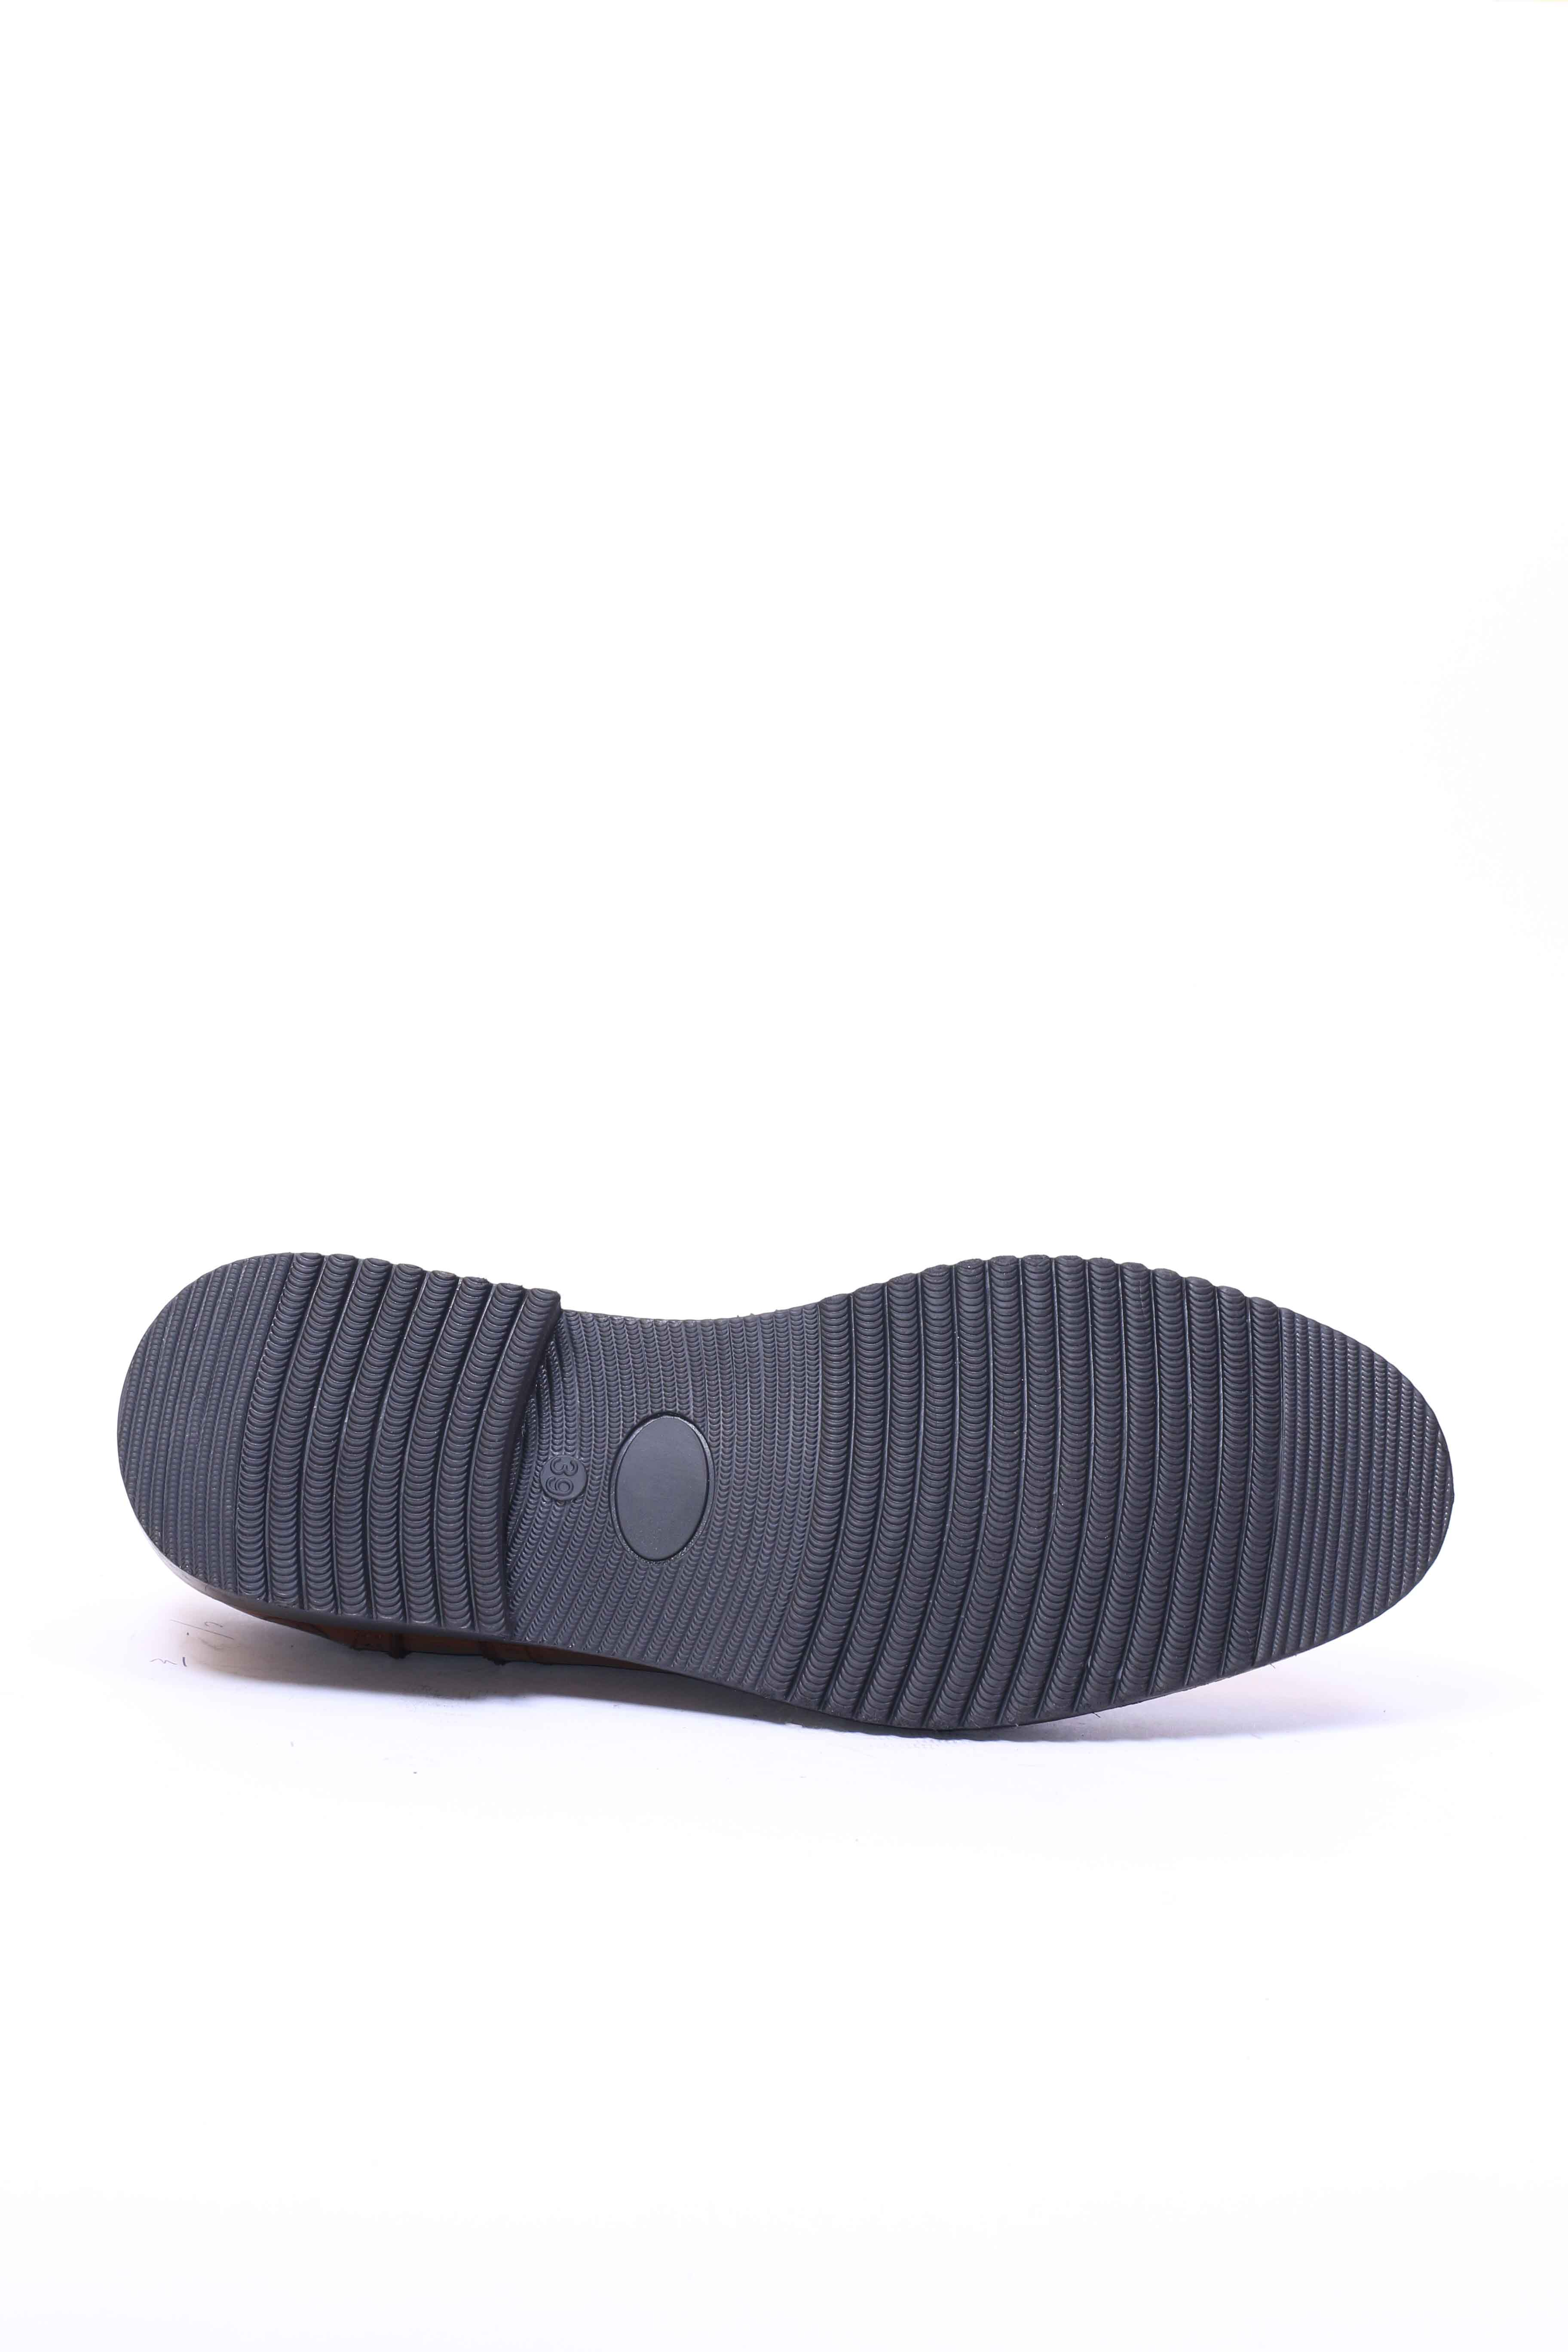 Chaussure en Cuir Tabac-5083